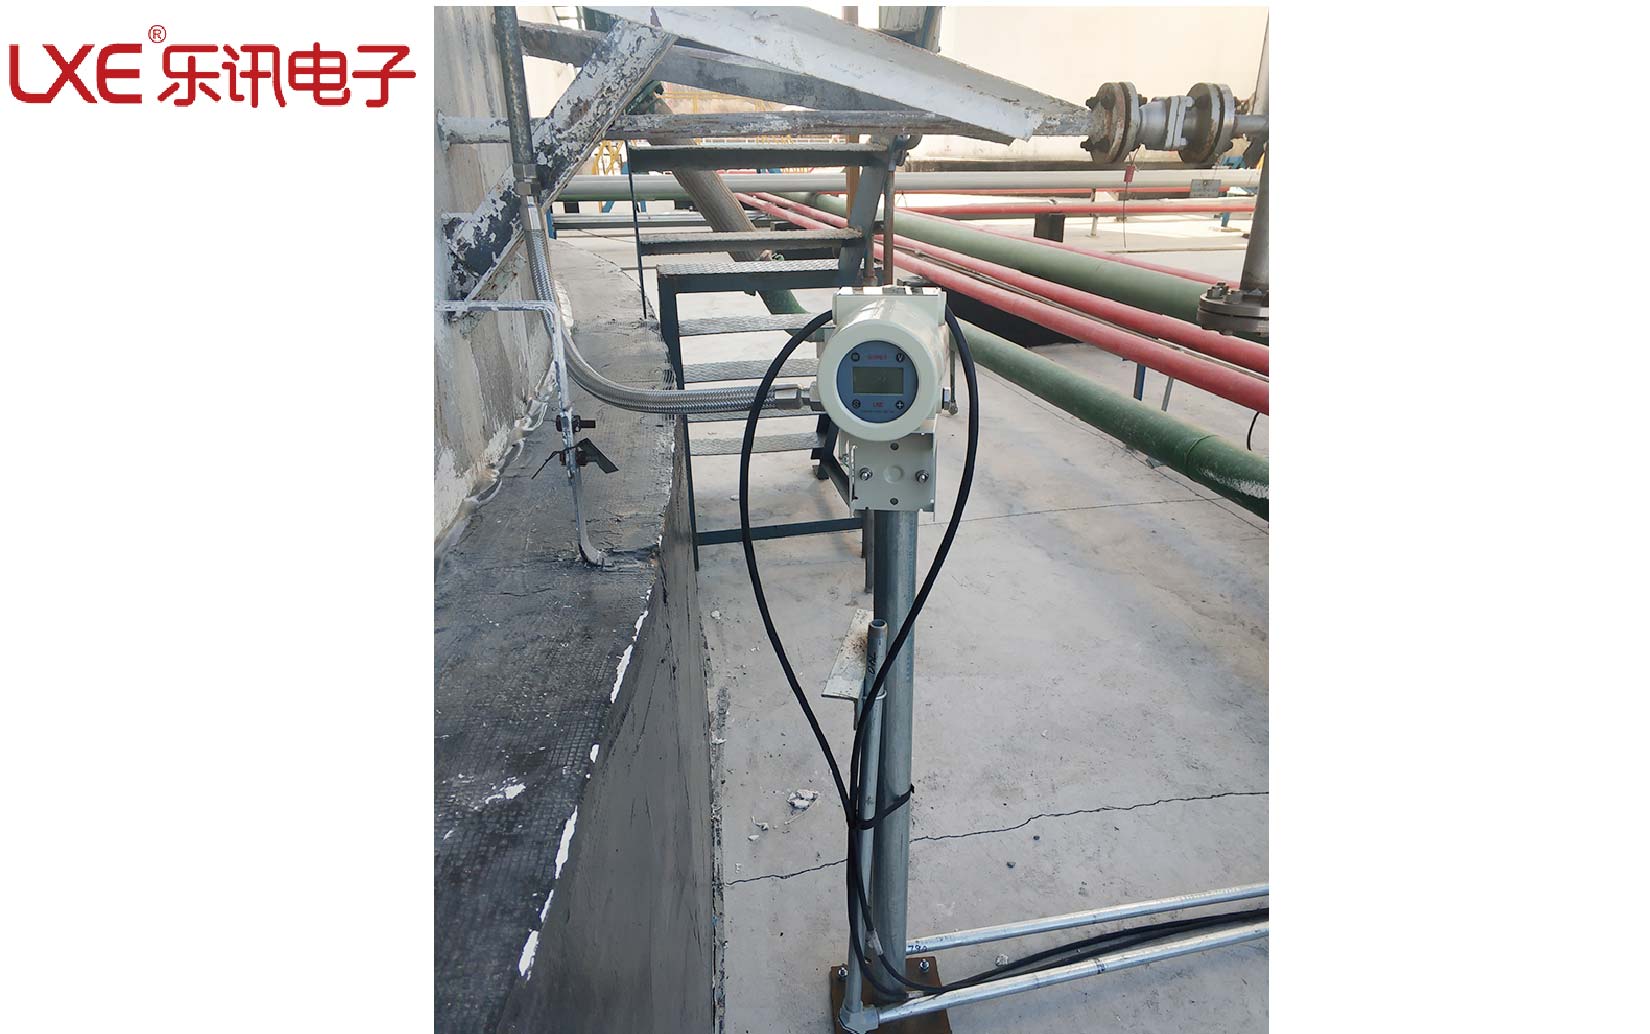 大慶某化工集團成功投用西安樂訊超聲波外貼液位開關